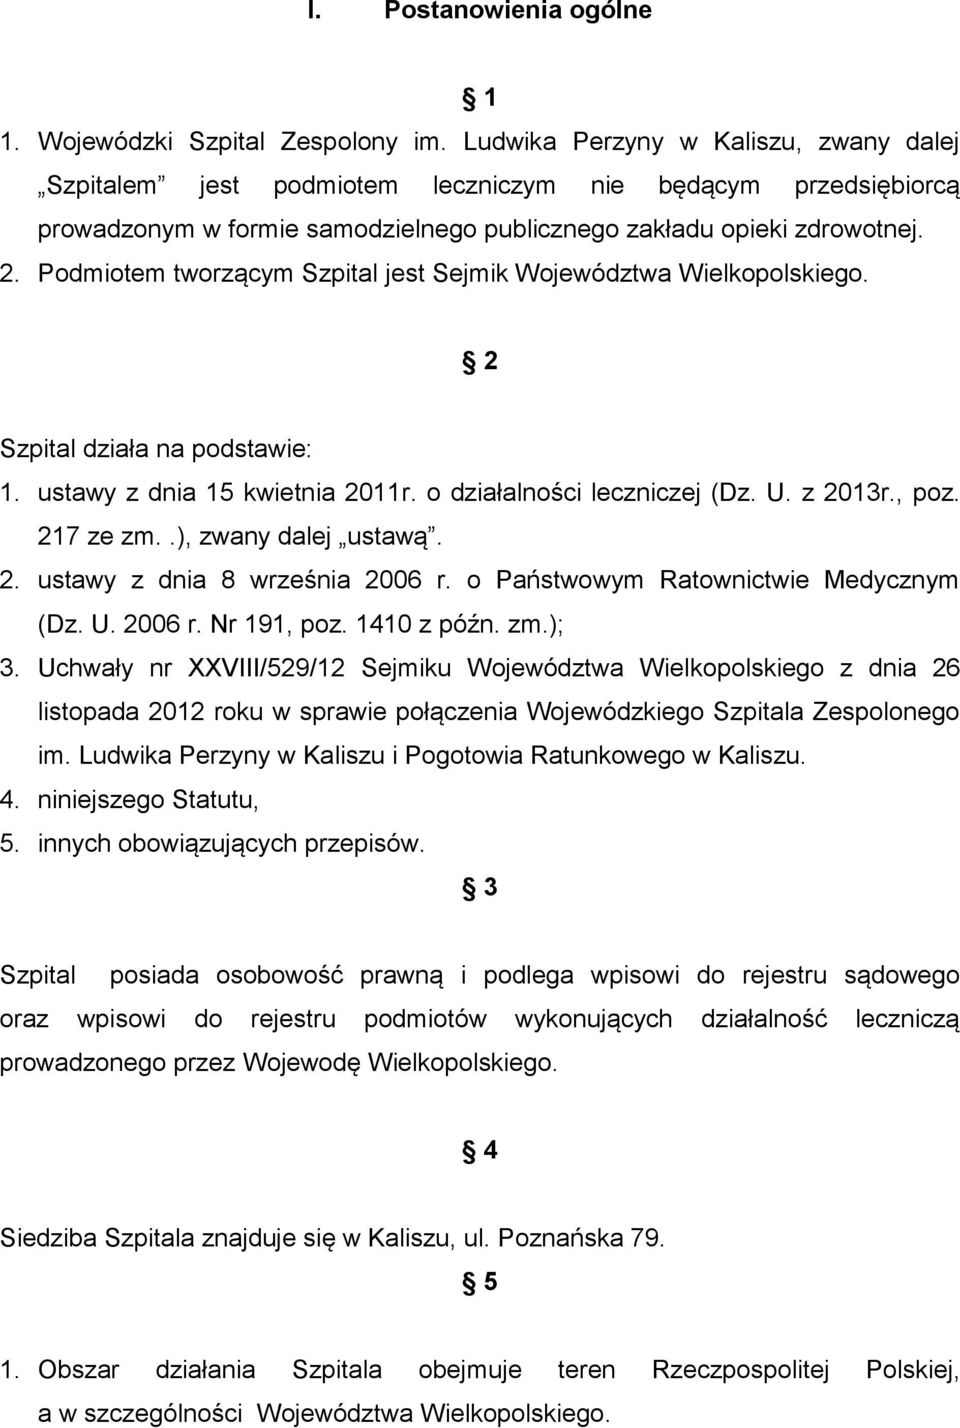 Podmiotem tworzącym Szpital jest Sejmik Województwa Wielkopolskiego. 2 Szpital działa na podstawie: 1. ustawy z dnia 15 kwietnia 2011r. o działalności leczniczej (Dz. U. z 2013r., poz. 217 ze zm.